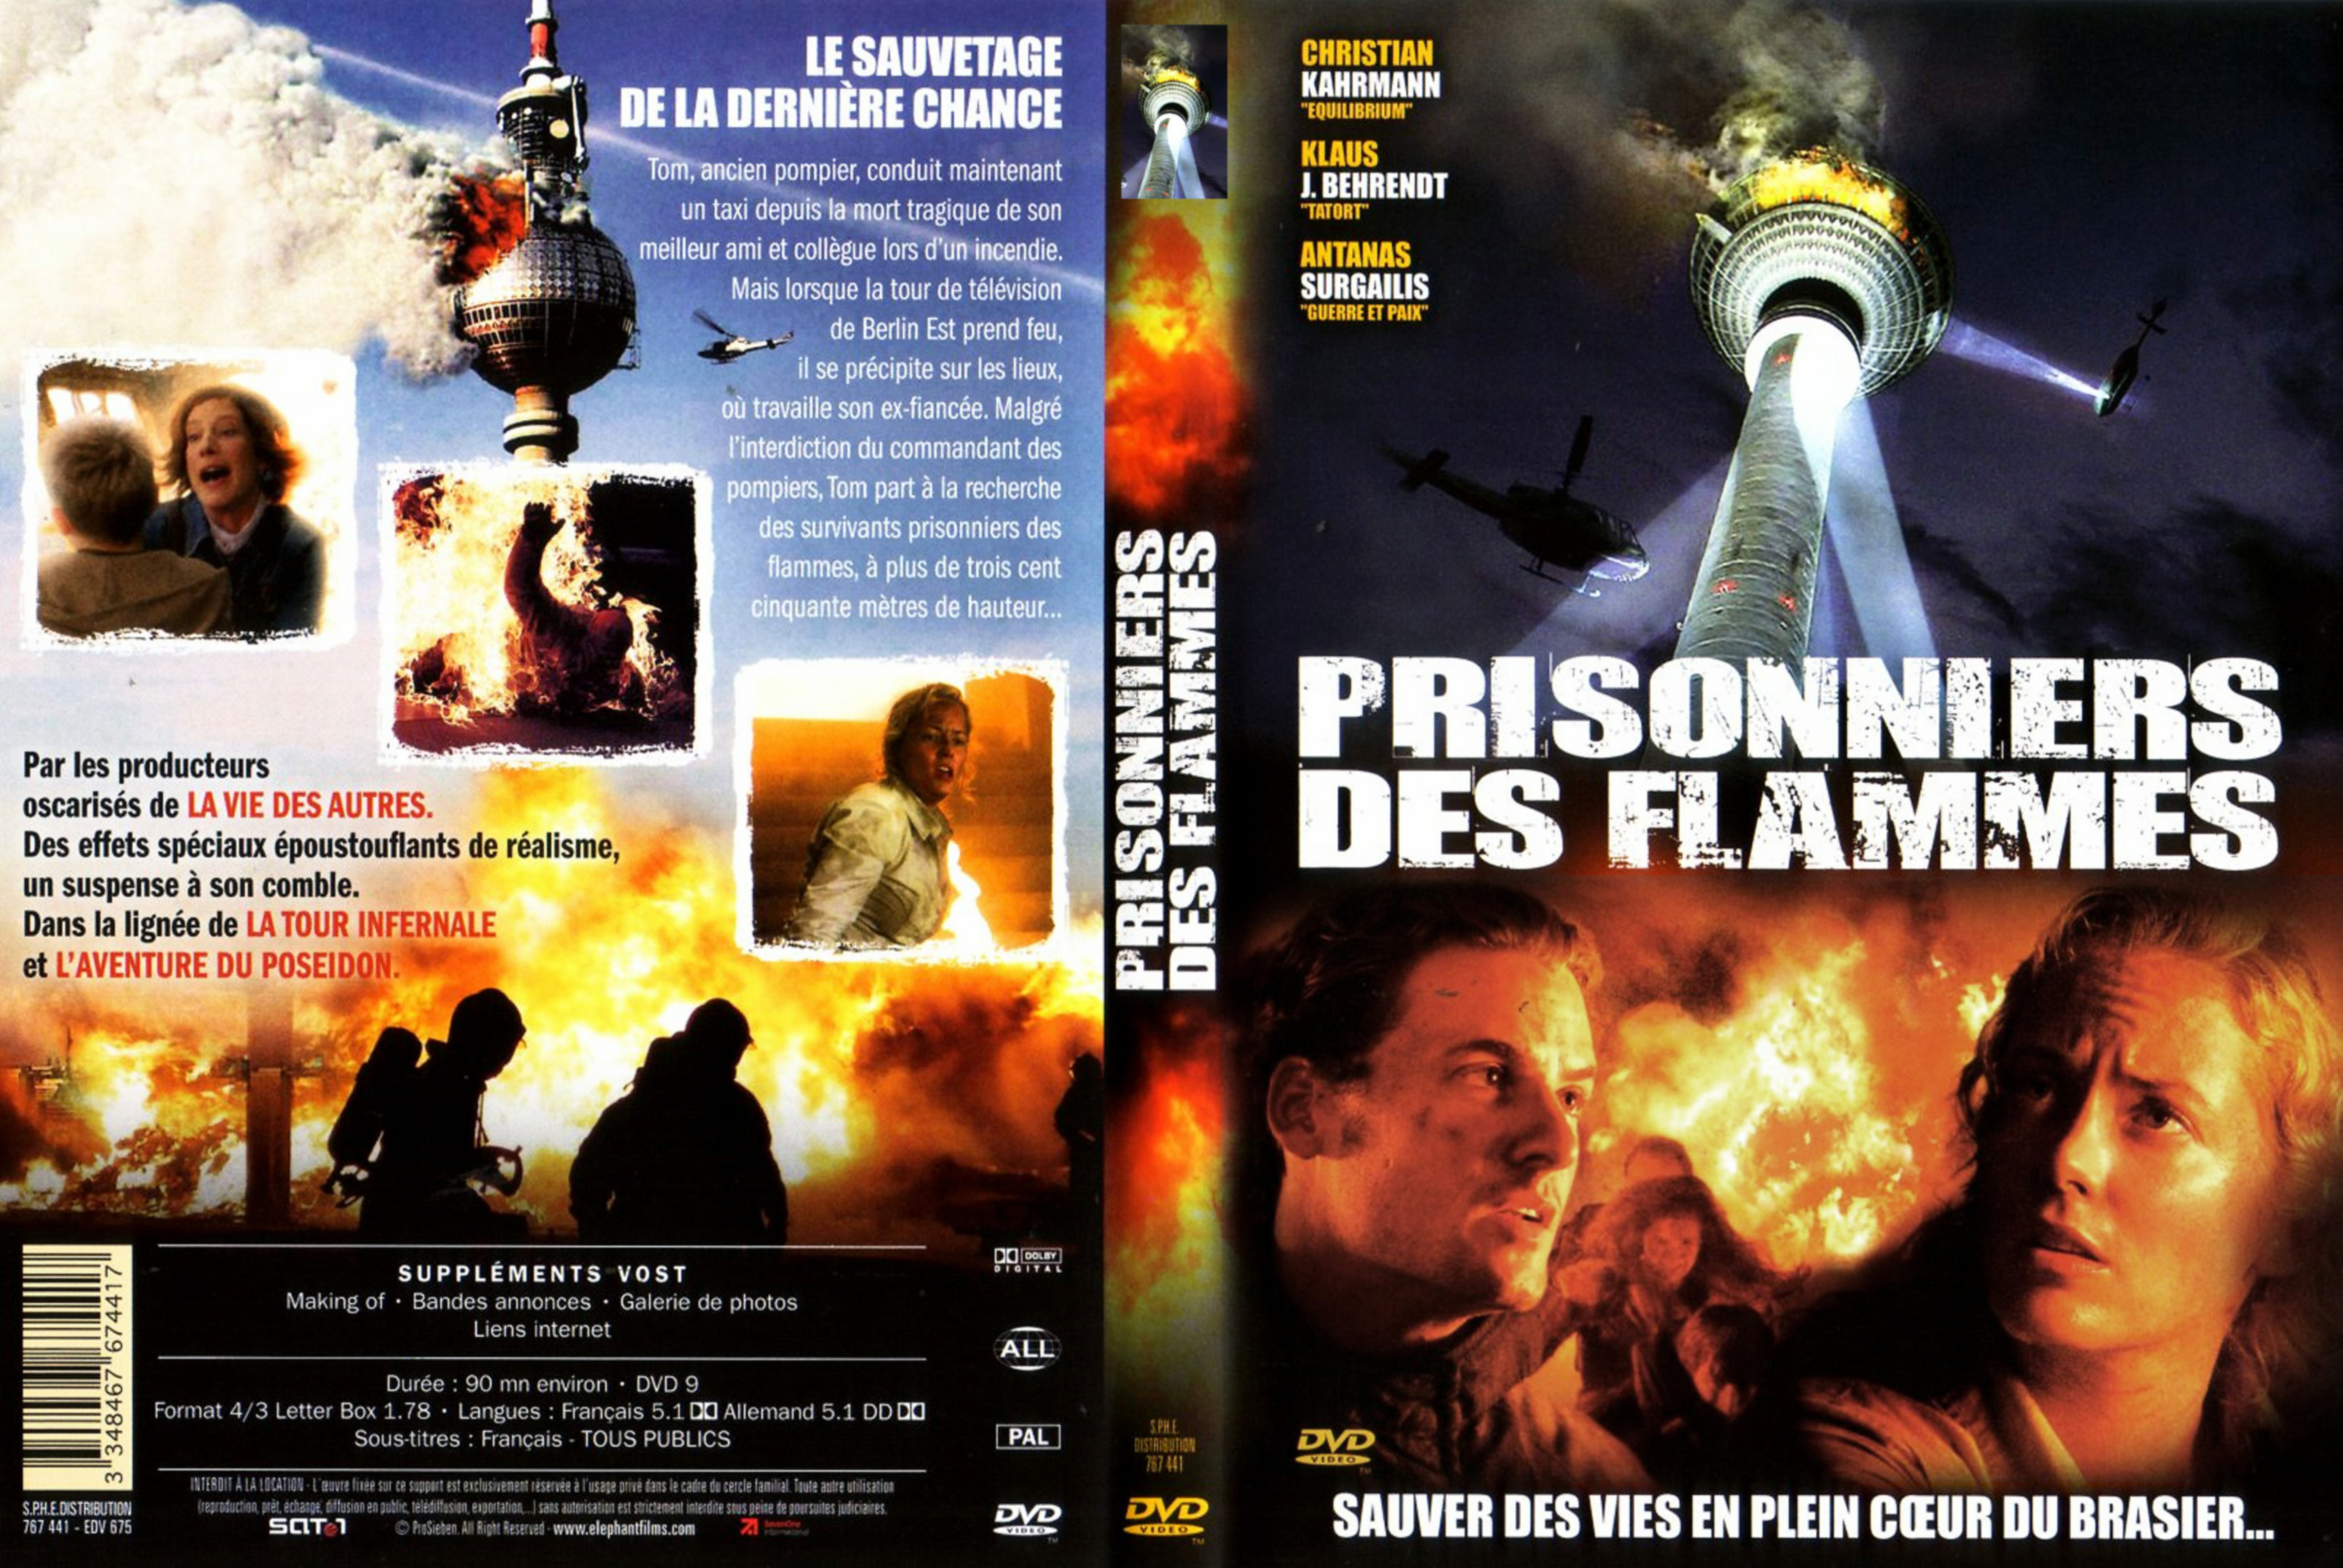 Jaquette DVD Prisonniers des flammes